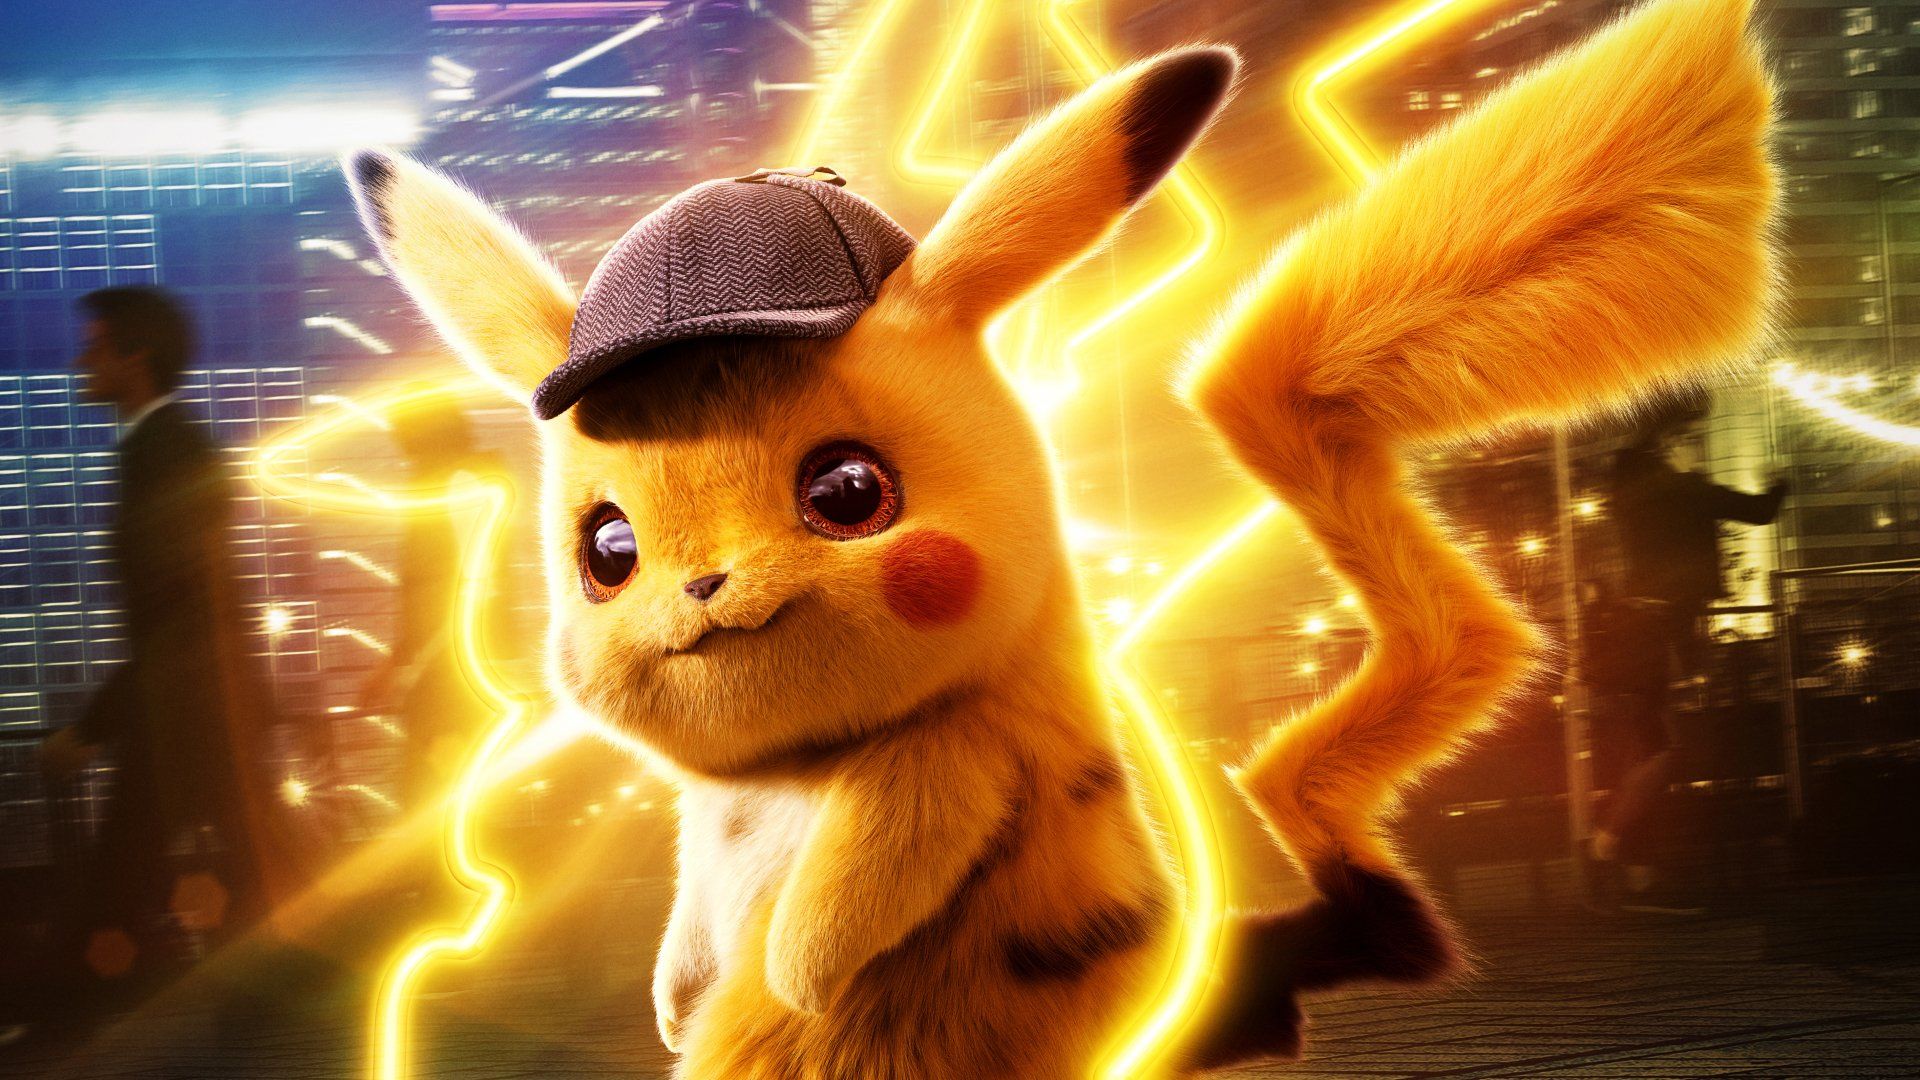 Pokémon Detective Pikachu HD Wallpaper